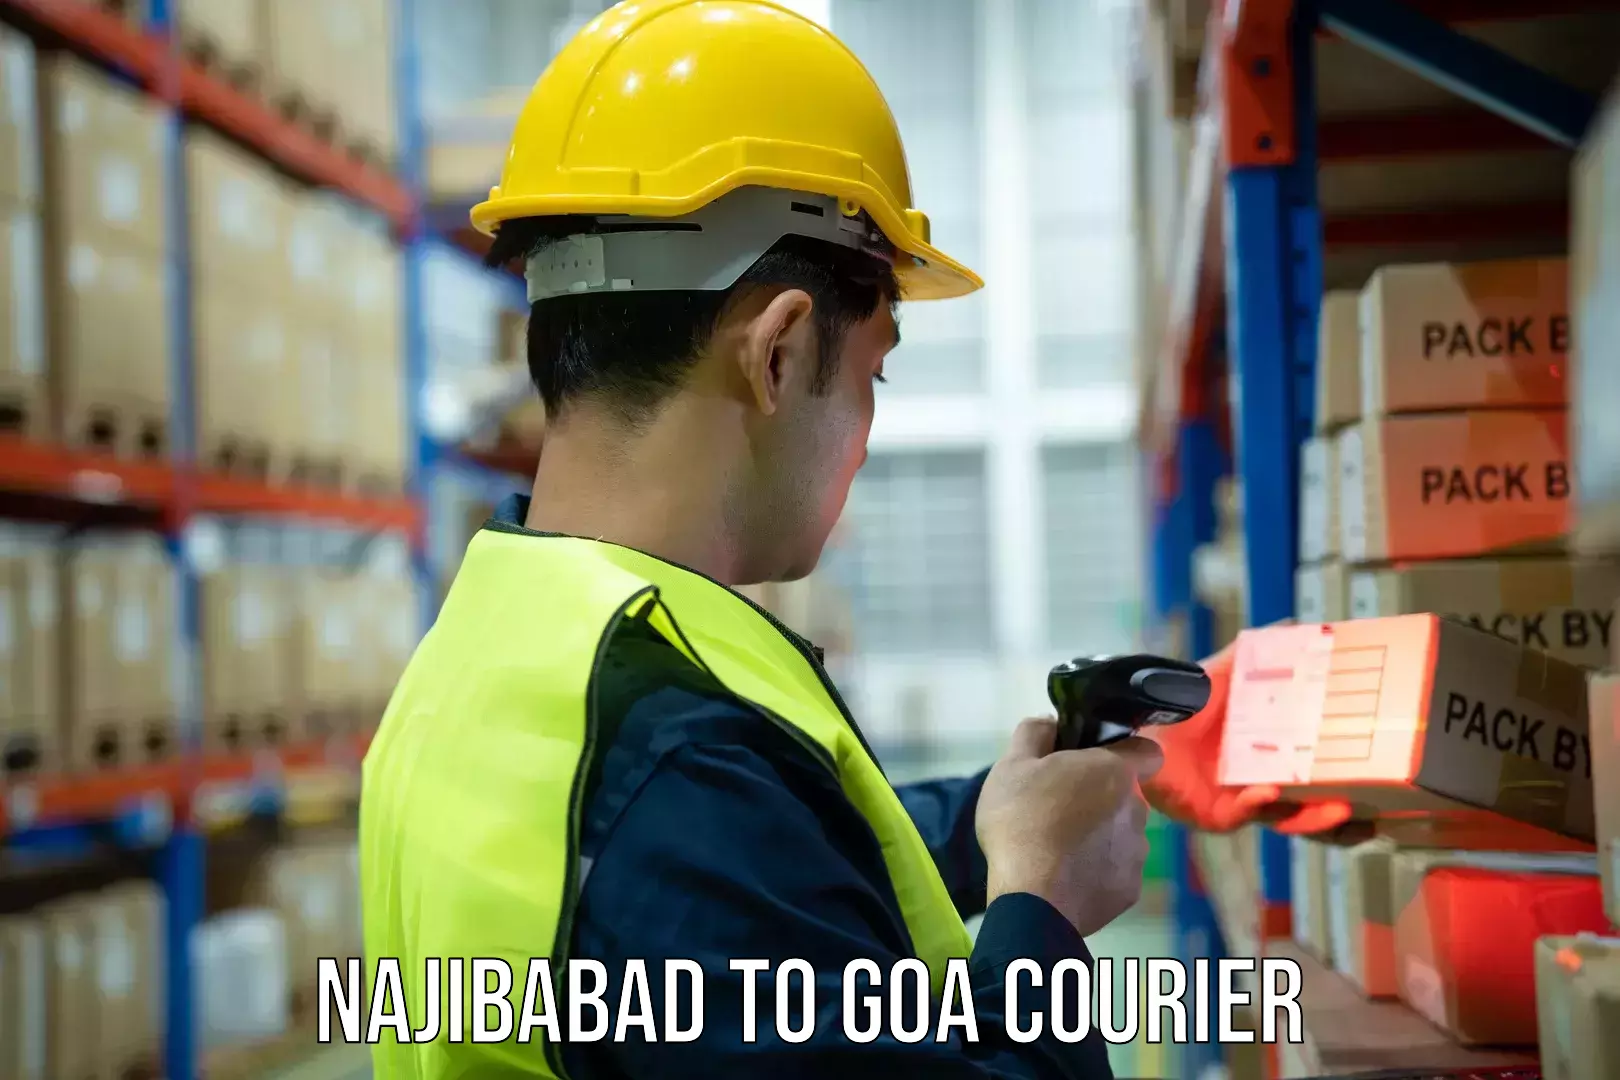 Efficient freight service Najibabad to Canacona